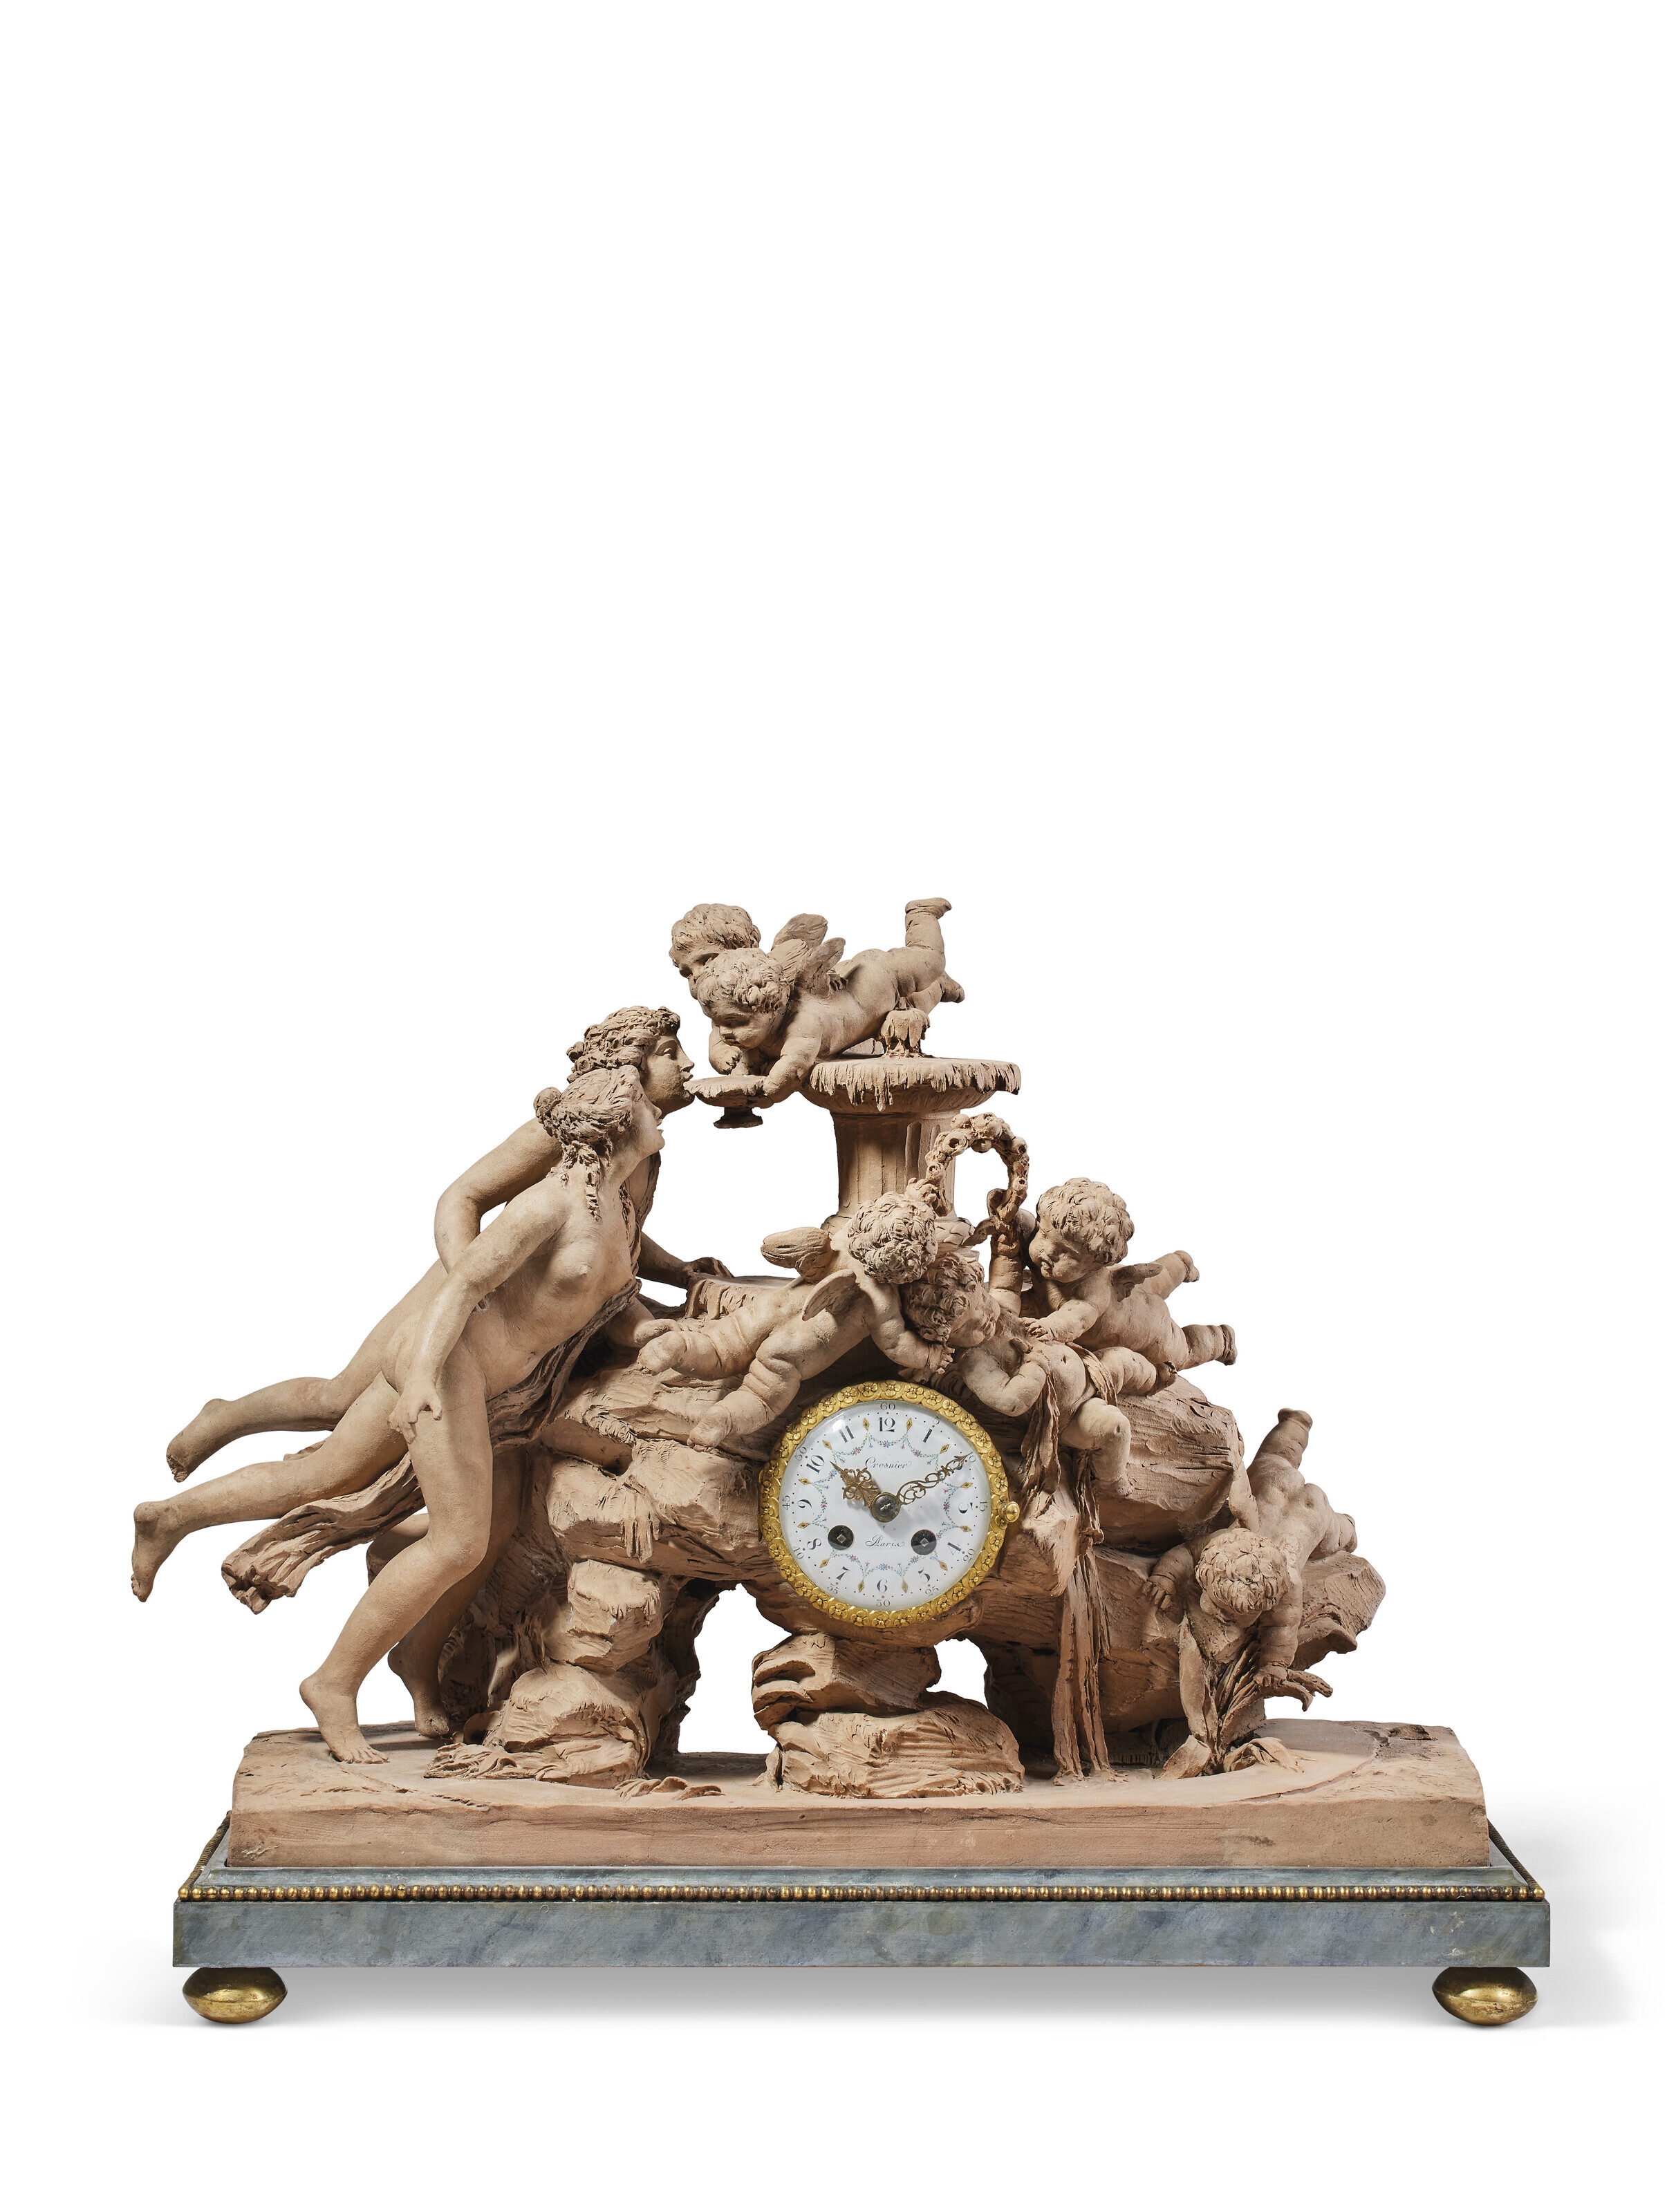 A TERRACOTTA CLOCK DEPICTING 'LA FONTAINE DE L'AMOUR' by Claude Michel Clodion, LATE 18TH CENTURY